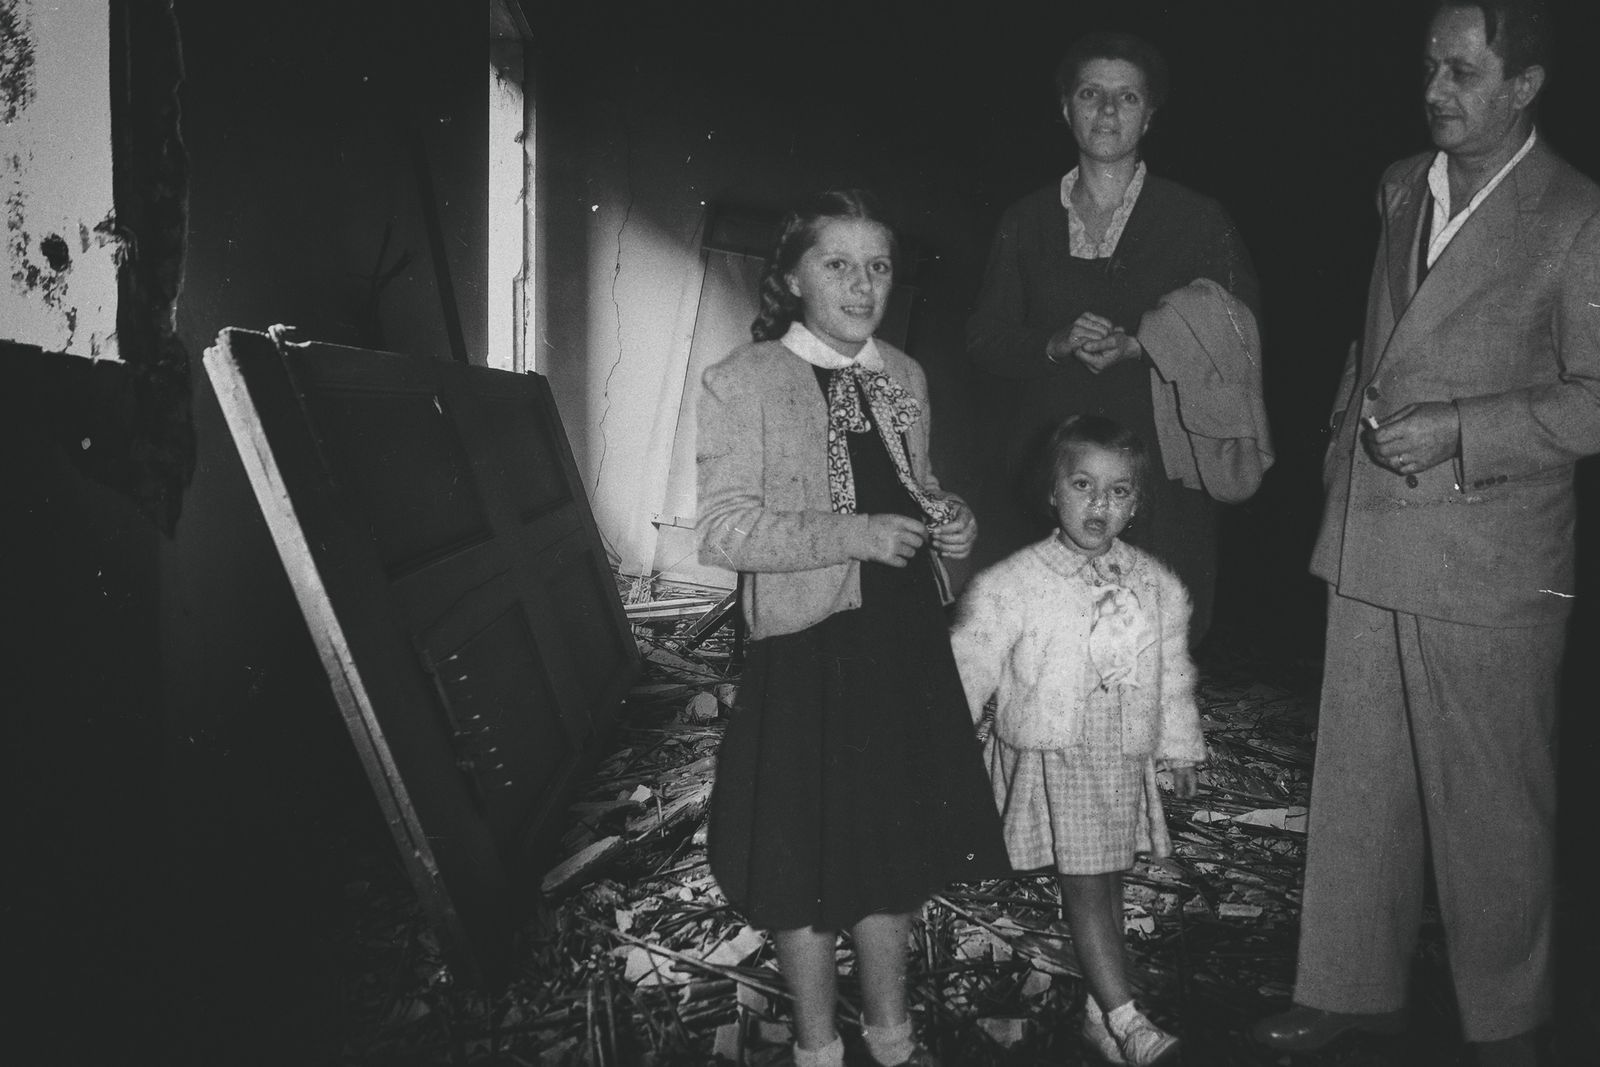 © BARBARA ZANON - Elsa, Ugo and the two girls around 1950